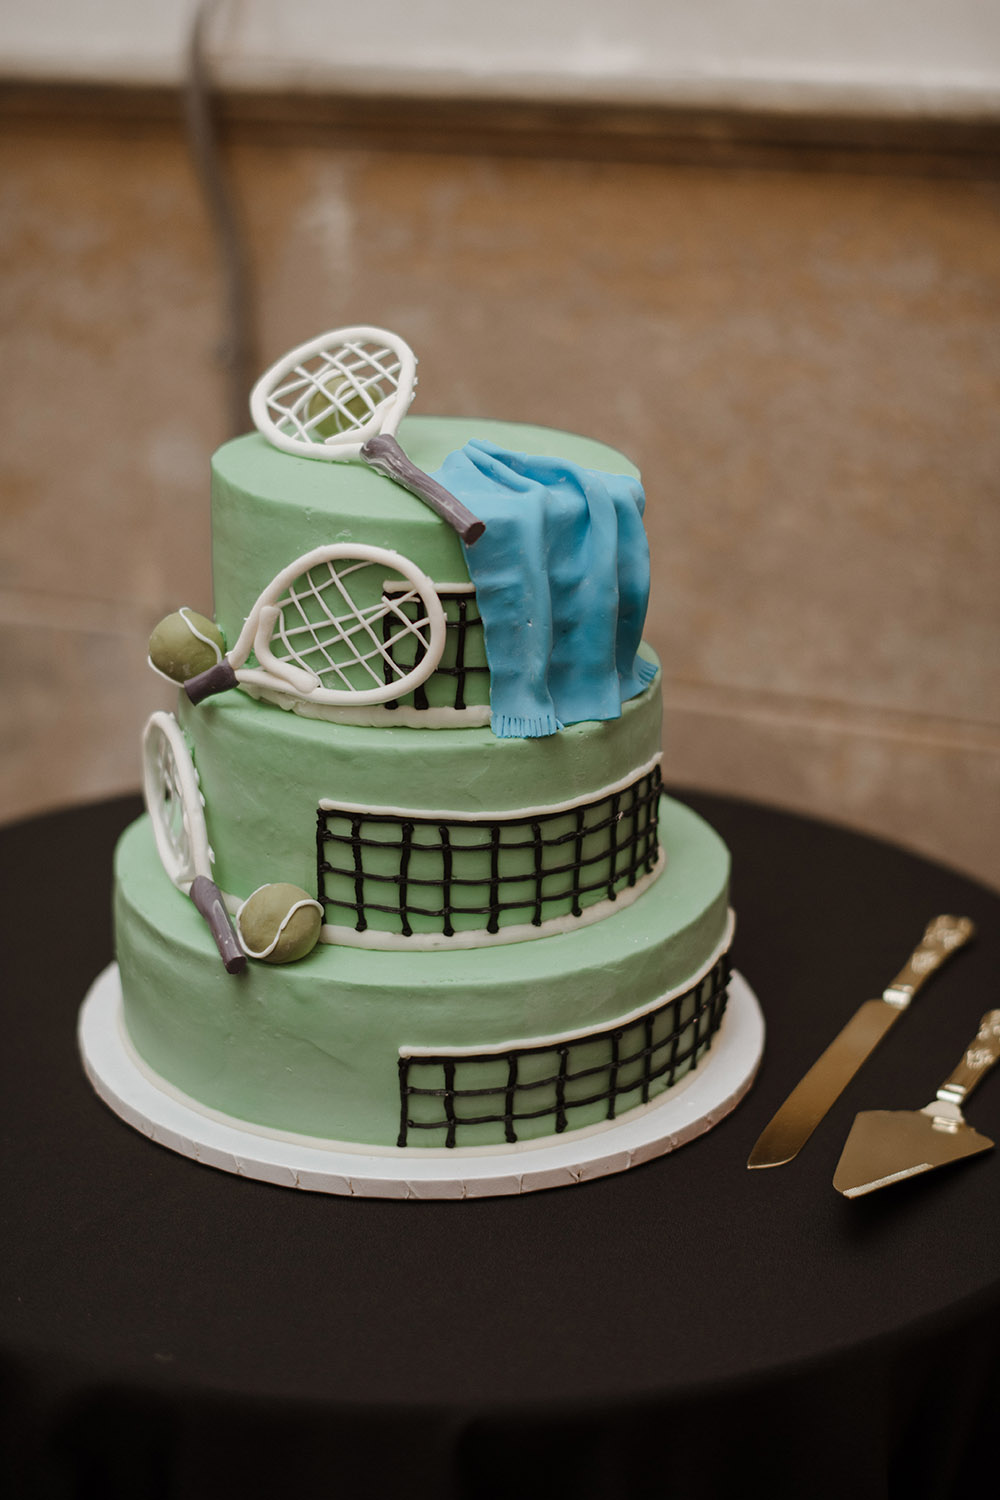 Ross' tennis-themed groom's cake